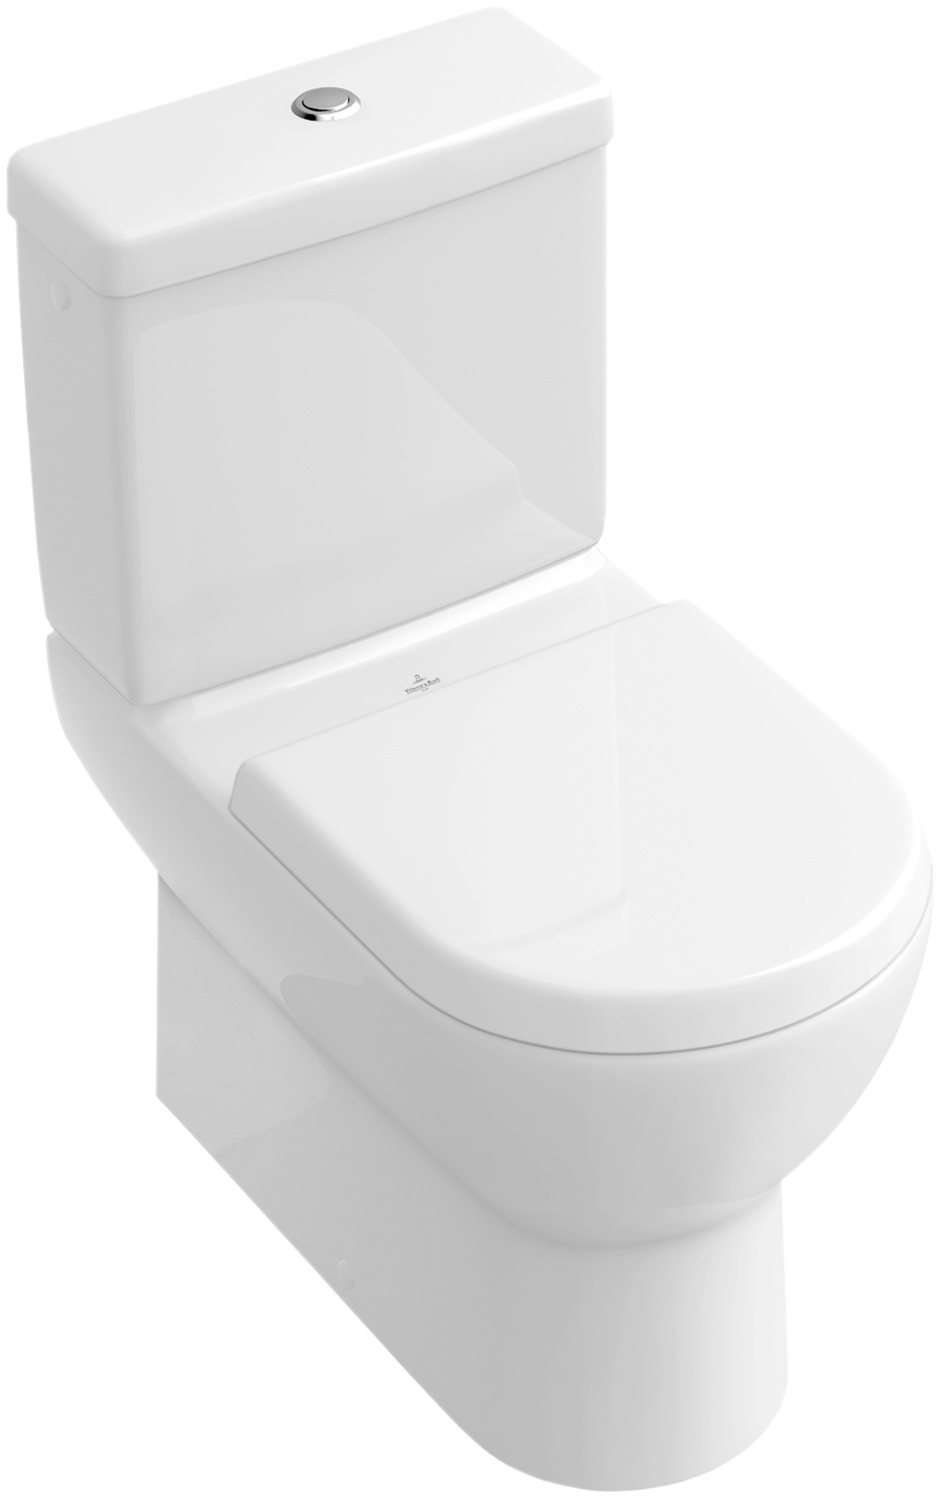 Tiefspül-WC „Subway“ in weiß